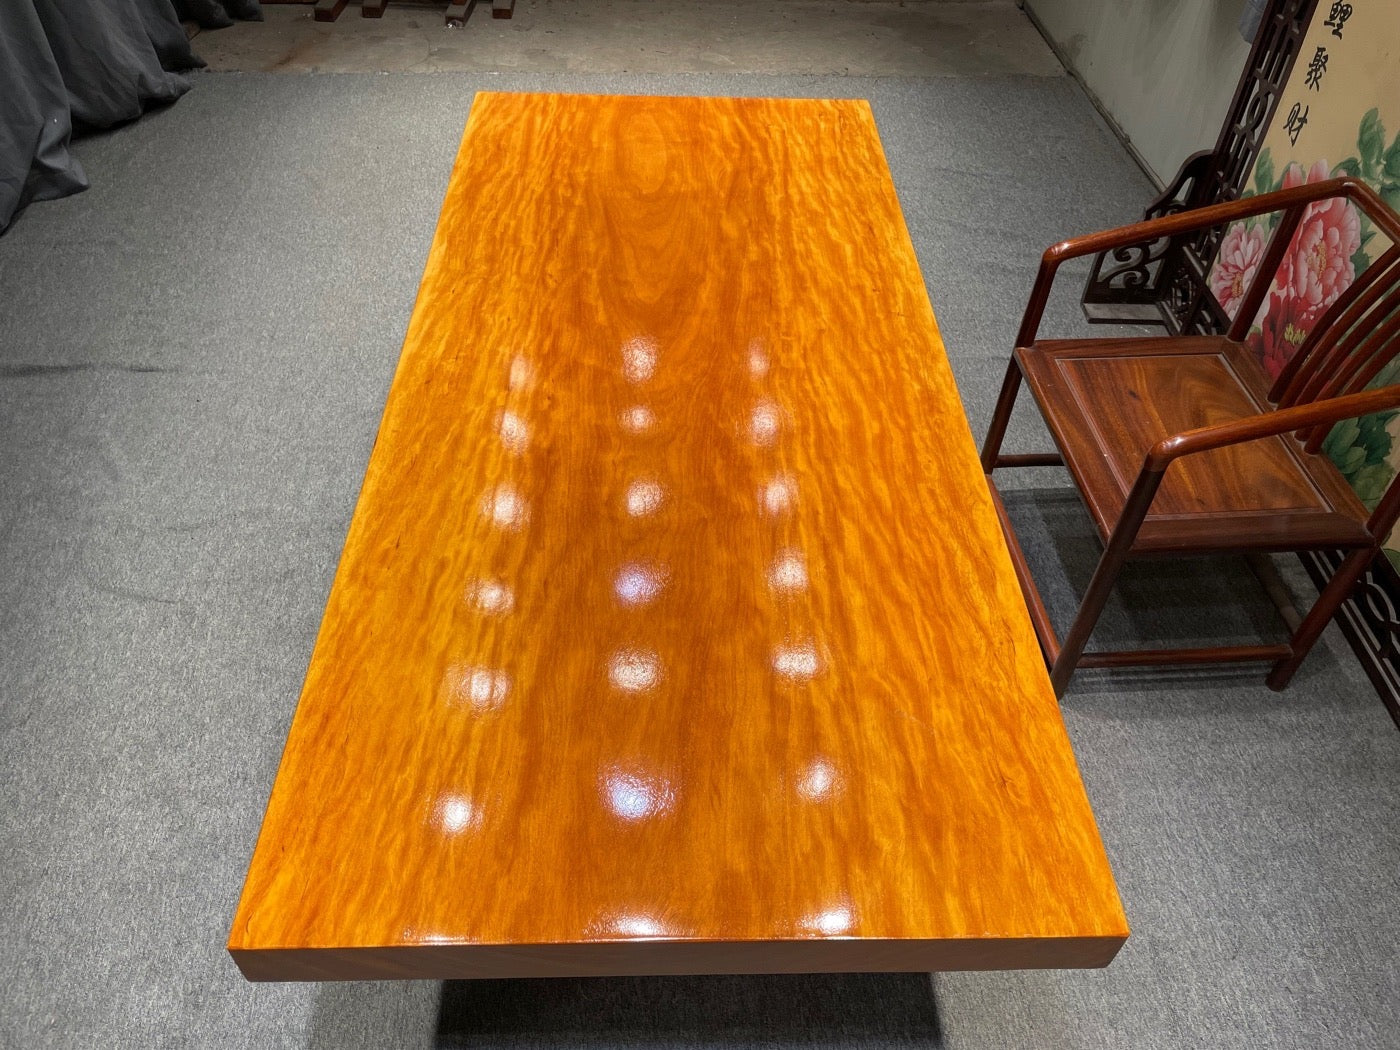 Skräddarsydd matbord i naturligt trä, orange färgbord